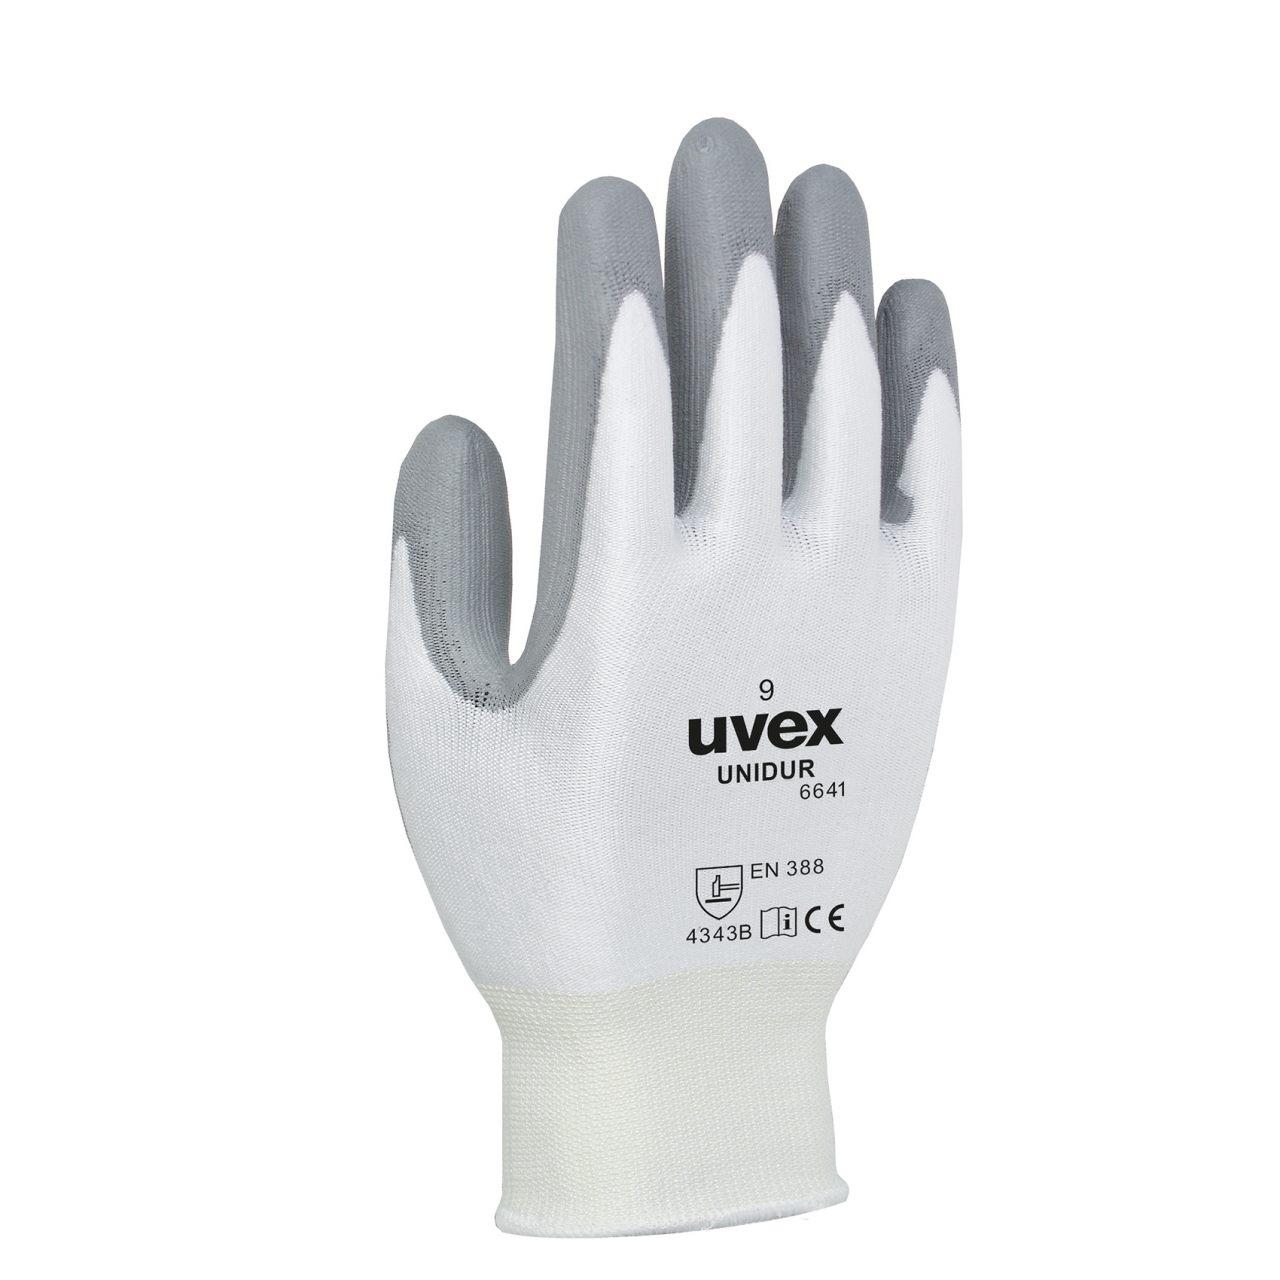 Защитные перчатки uvex унидур 6641